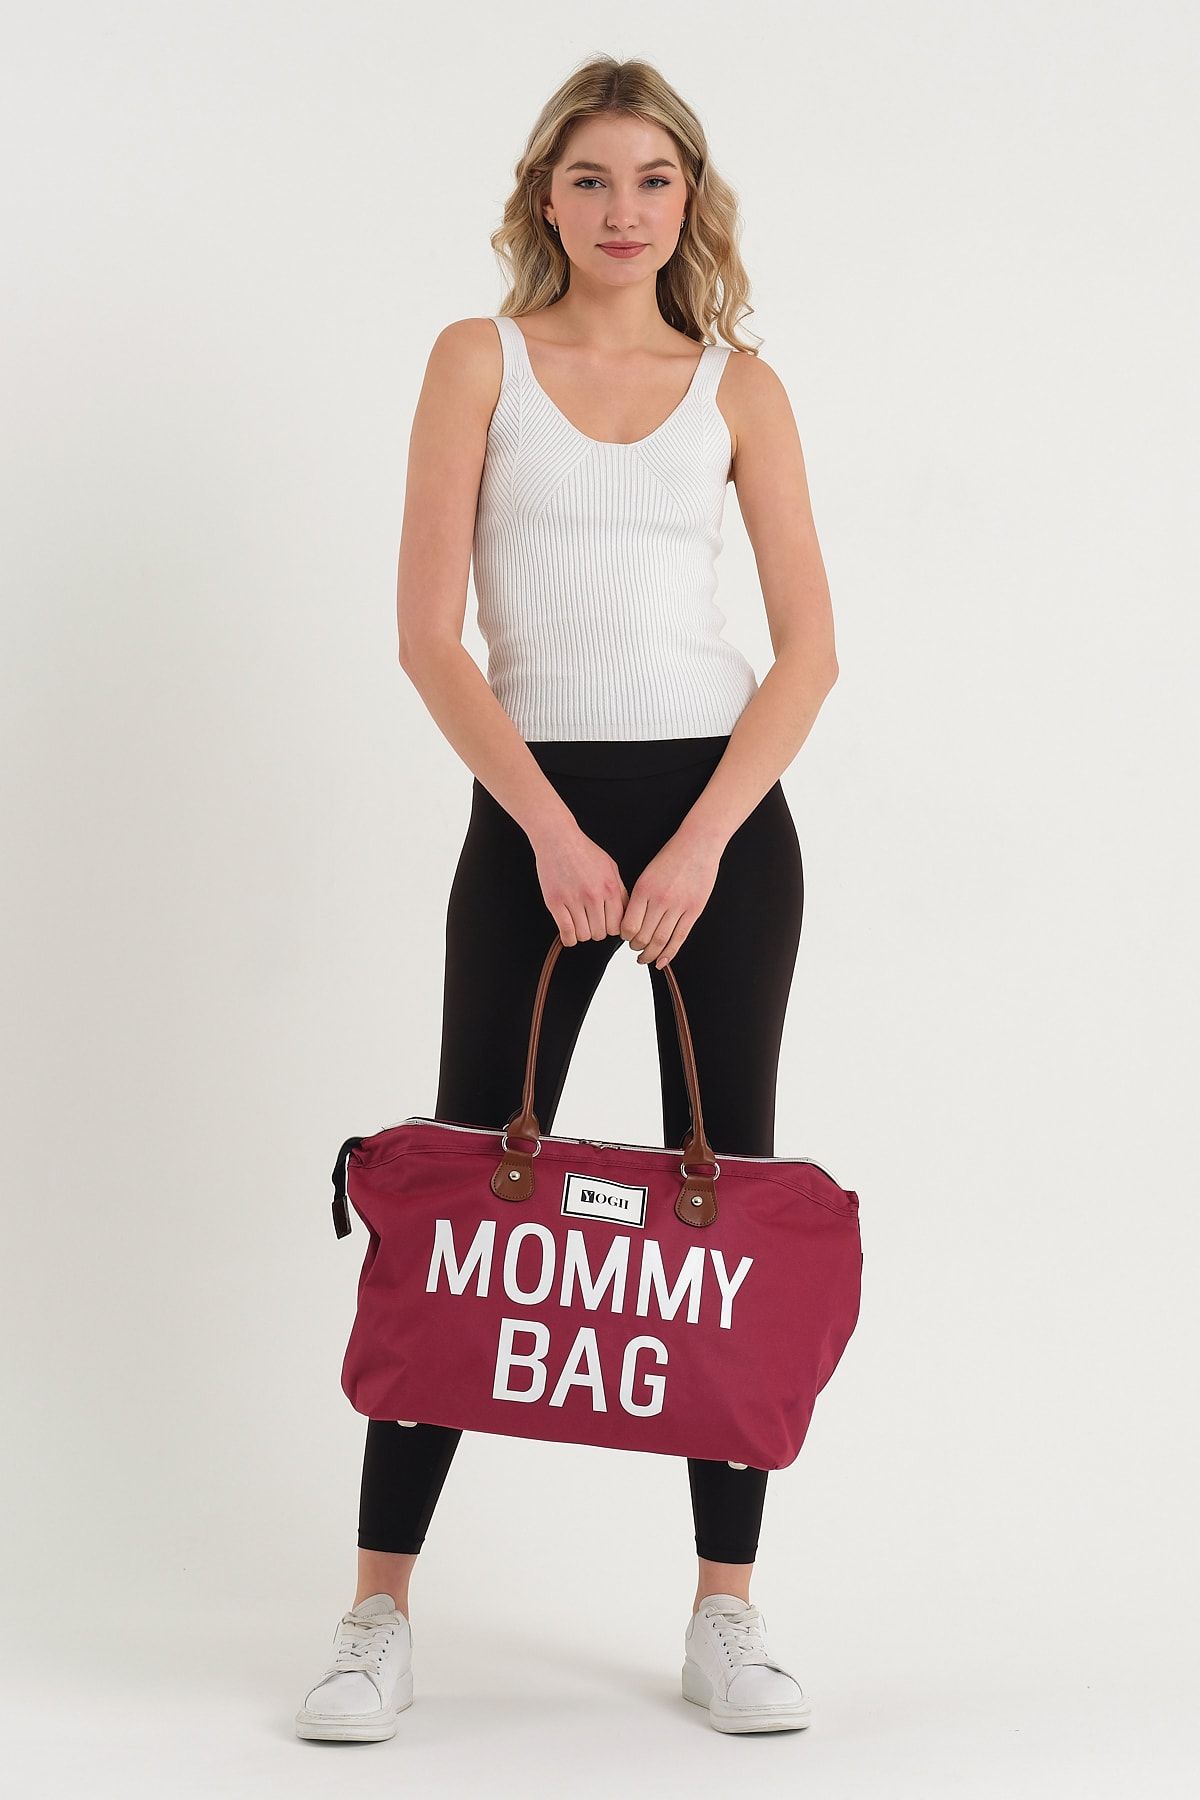 YOGII Mommy Bag Anne Bebek Bakım Çantası Büyük Boy Termos Biberon Bölmeli Omuz Çanta